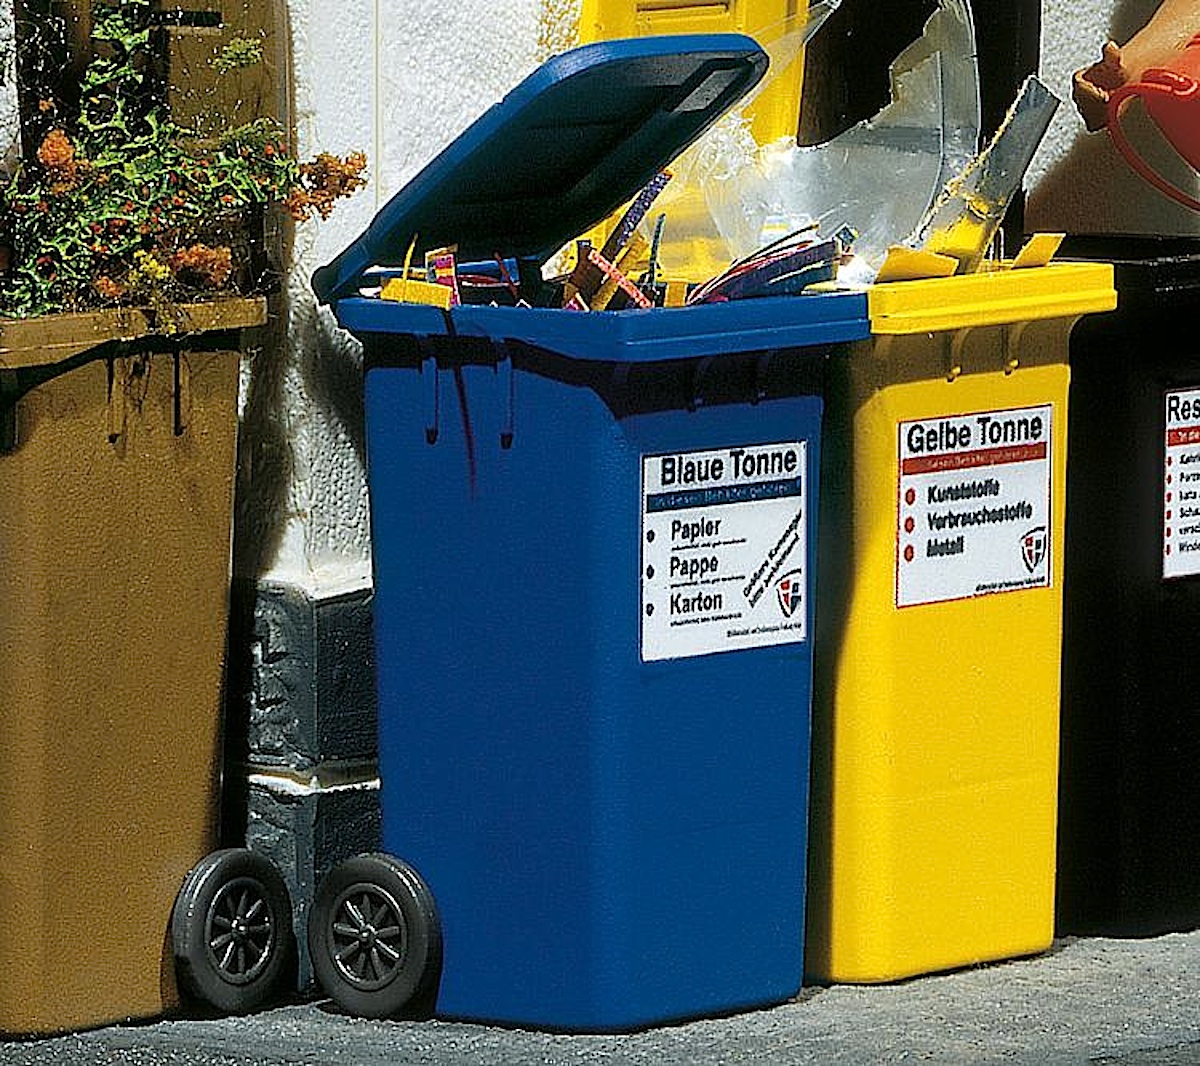 Mülltonnen, blau (Garbage bins, blue)